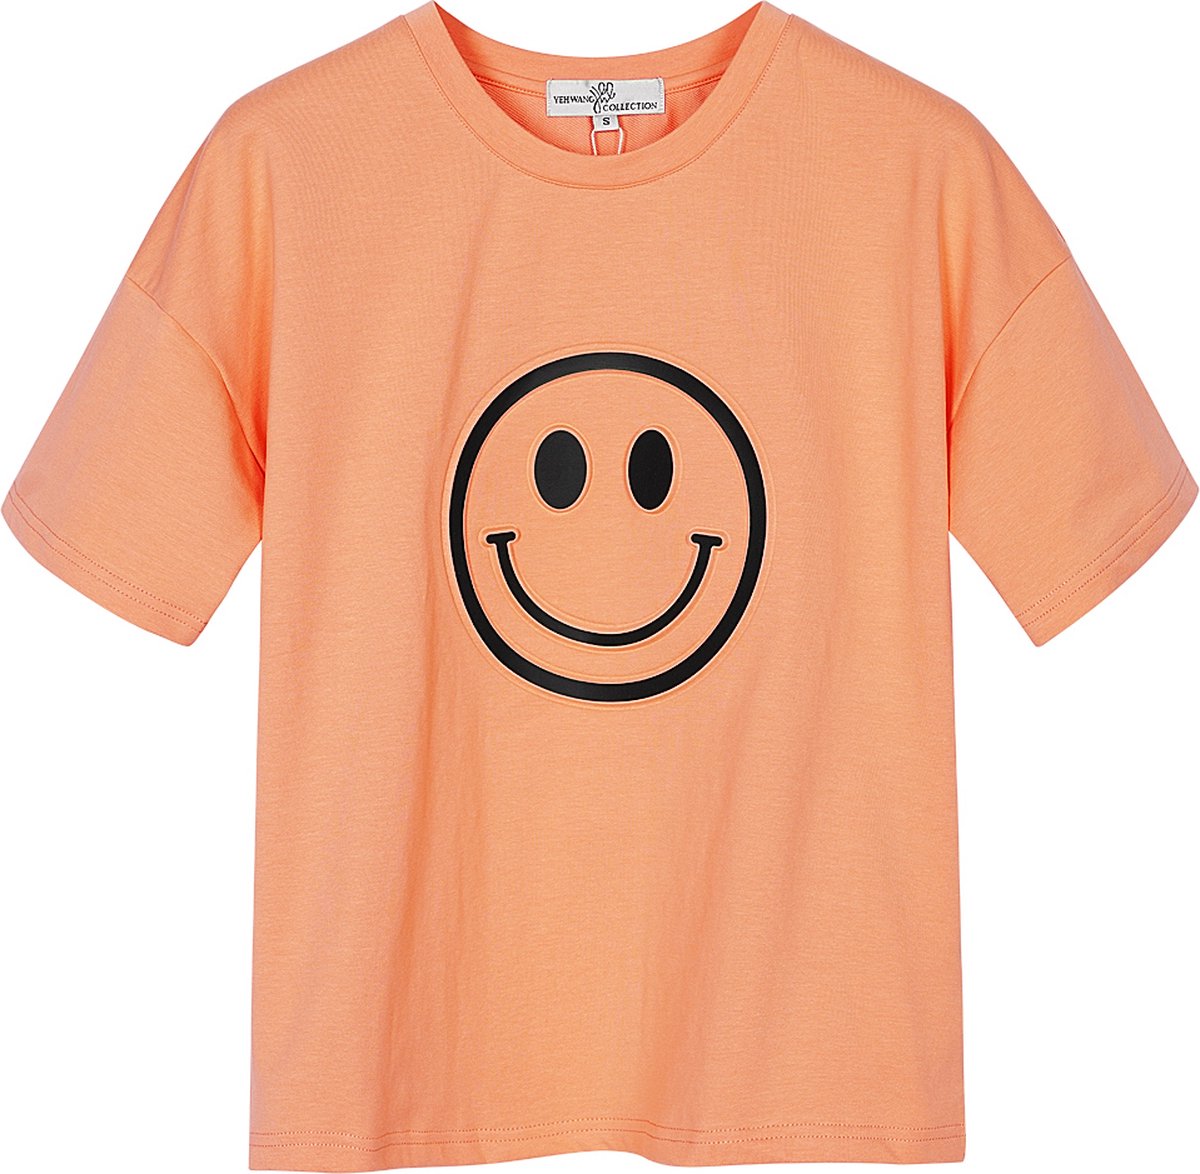 Yehwang - T-shirt met smiley - Oranje - Maat: L